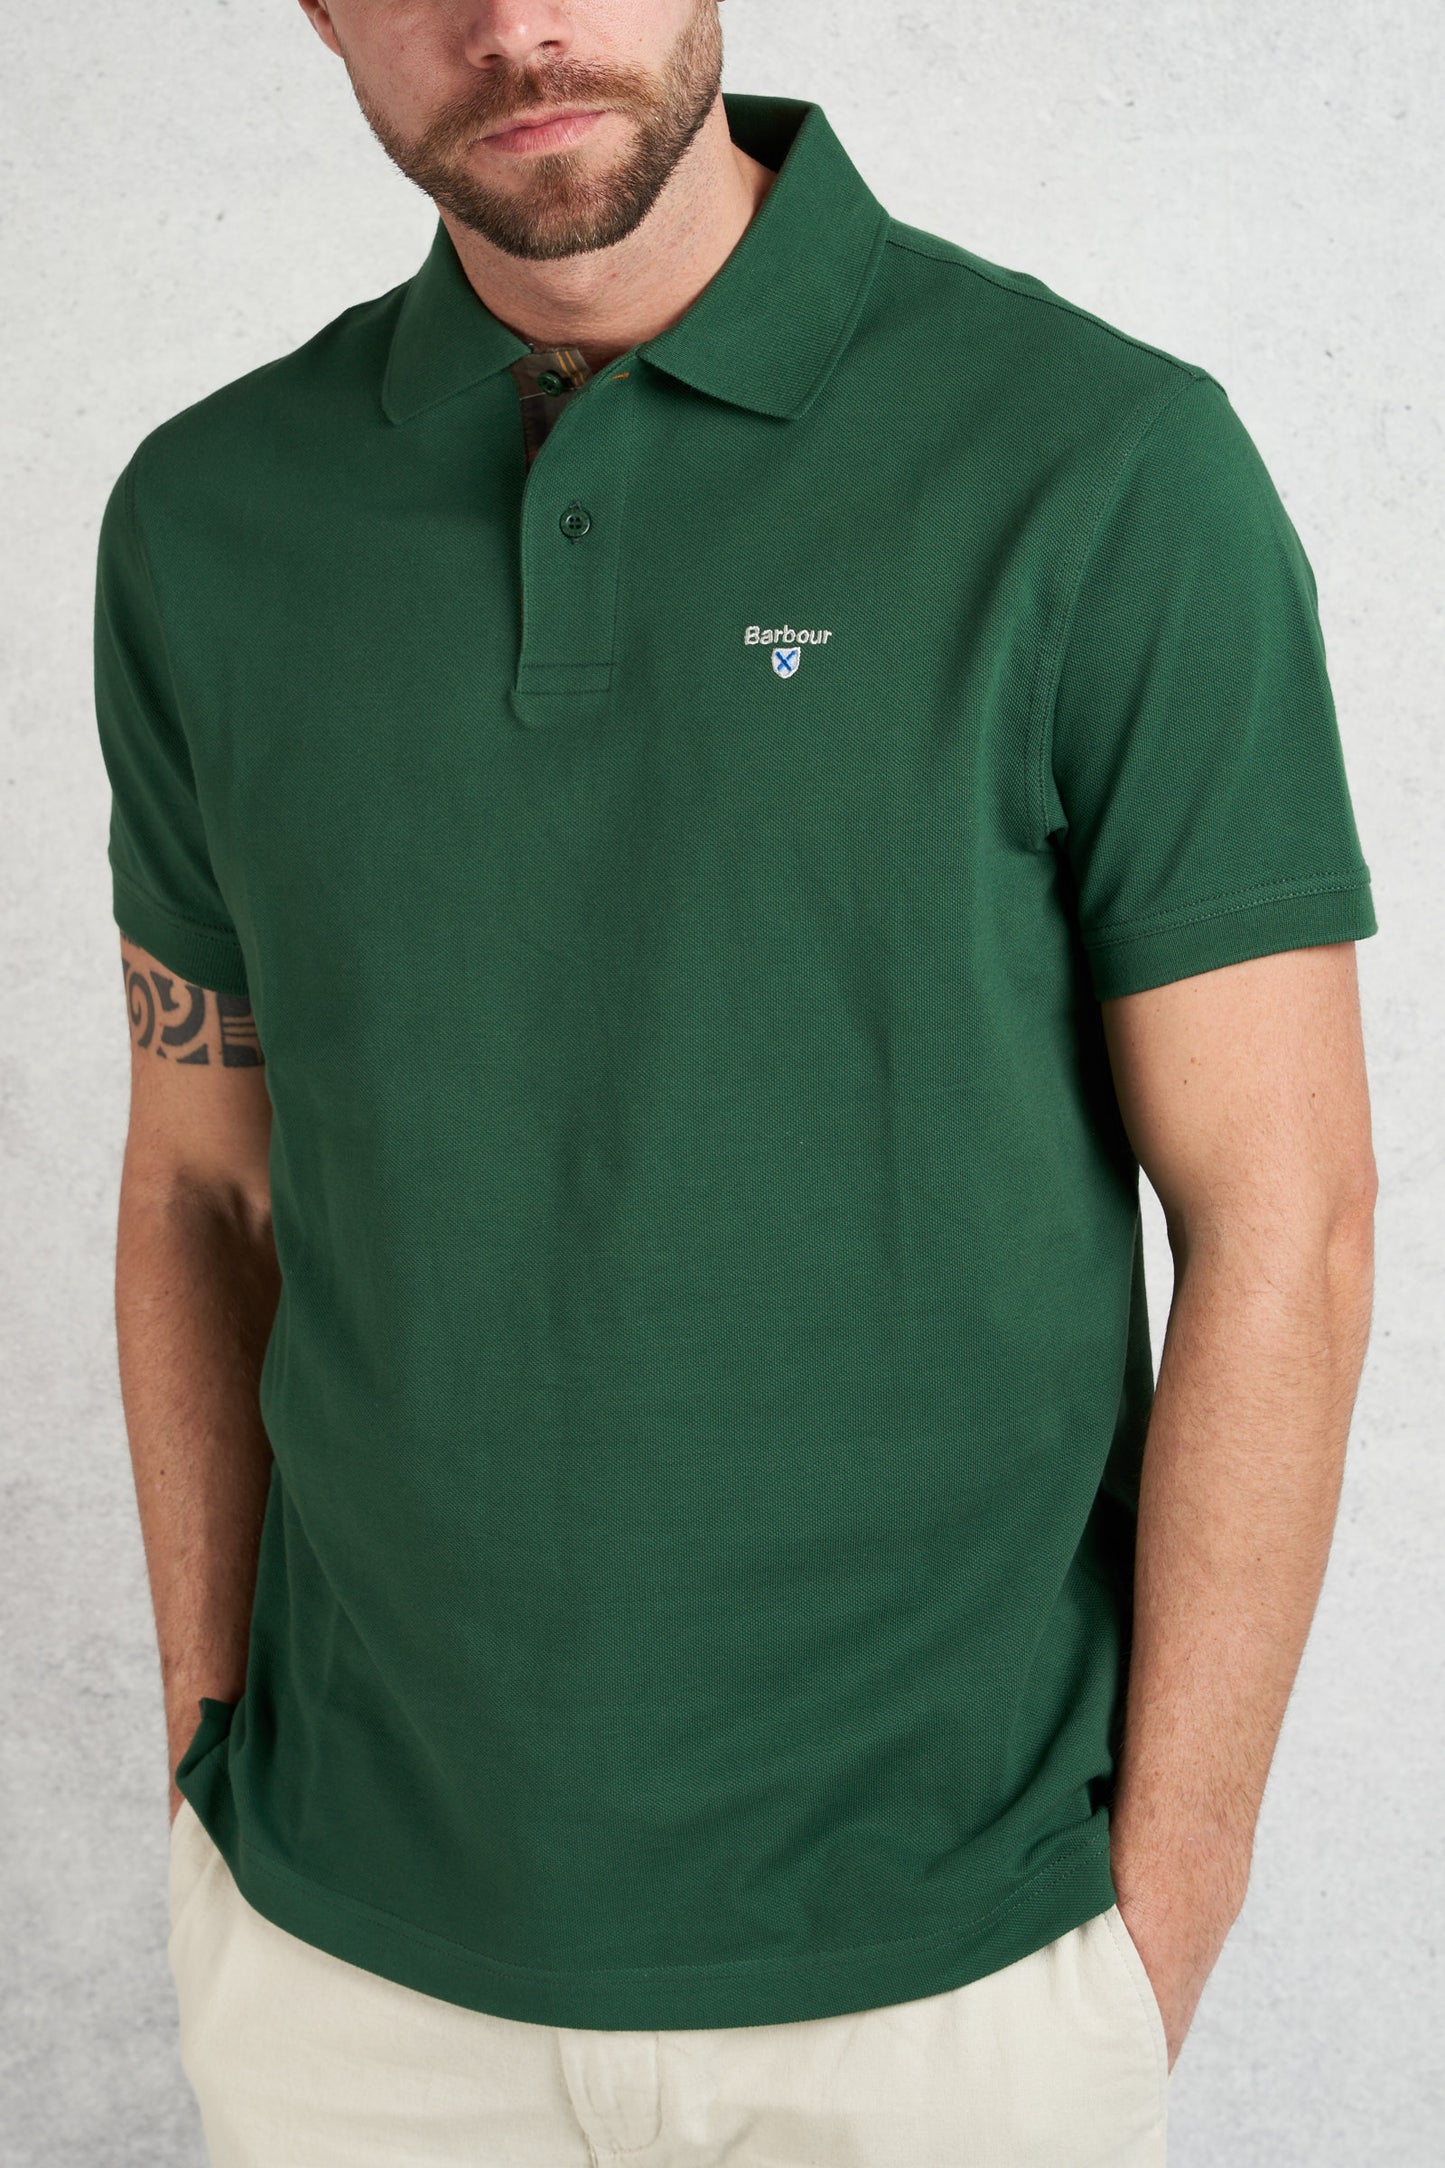  Barbour Men's Green Half Sleeve Polo Shirt Verde Uomo - 2